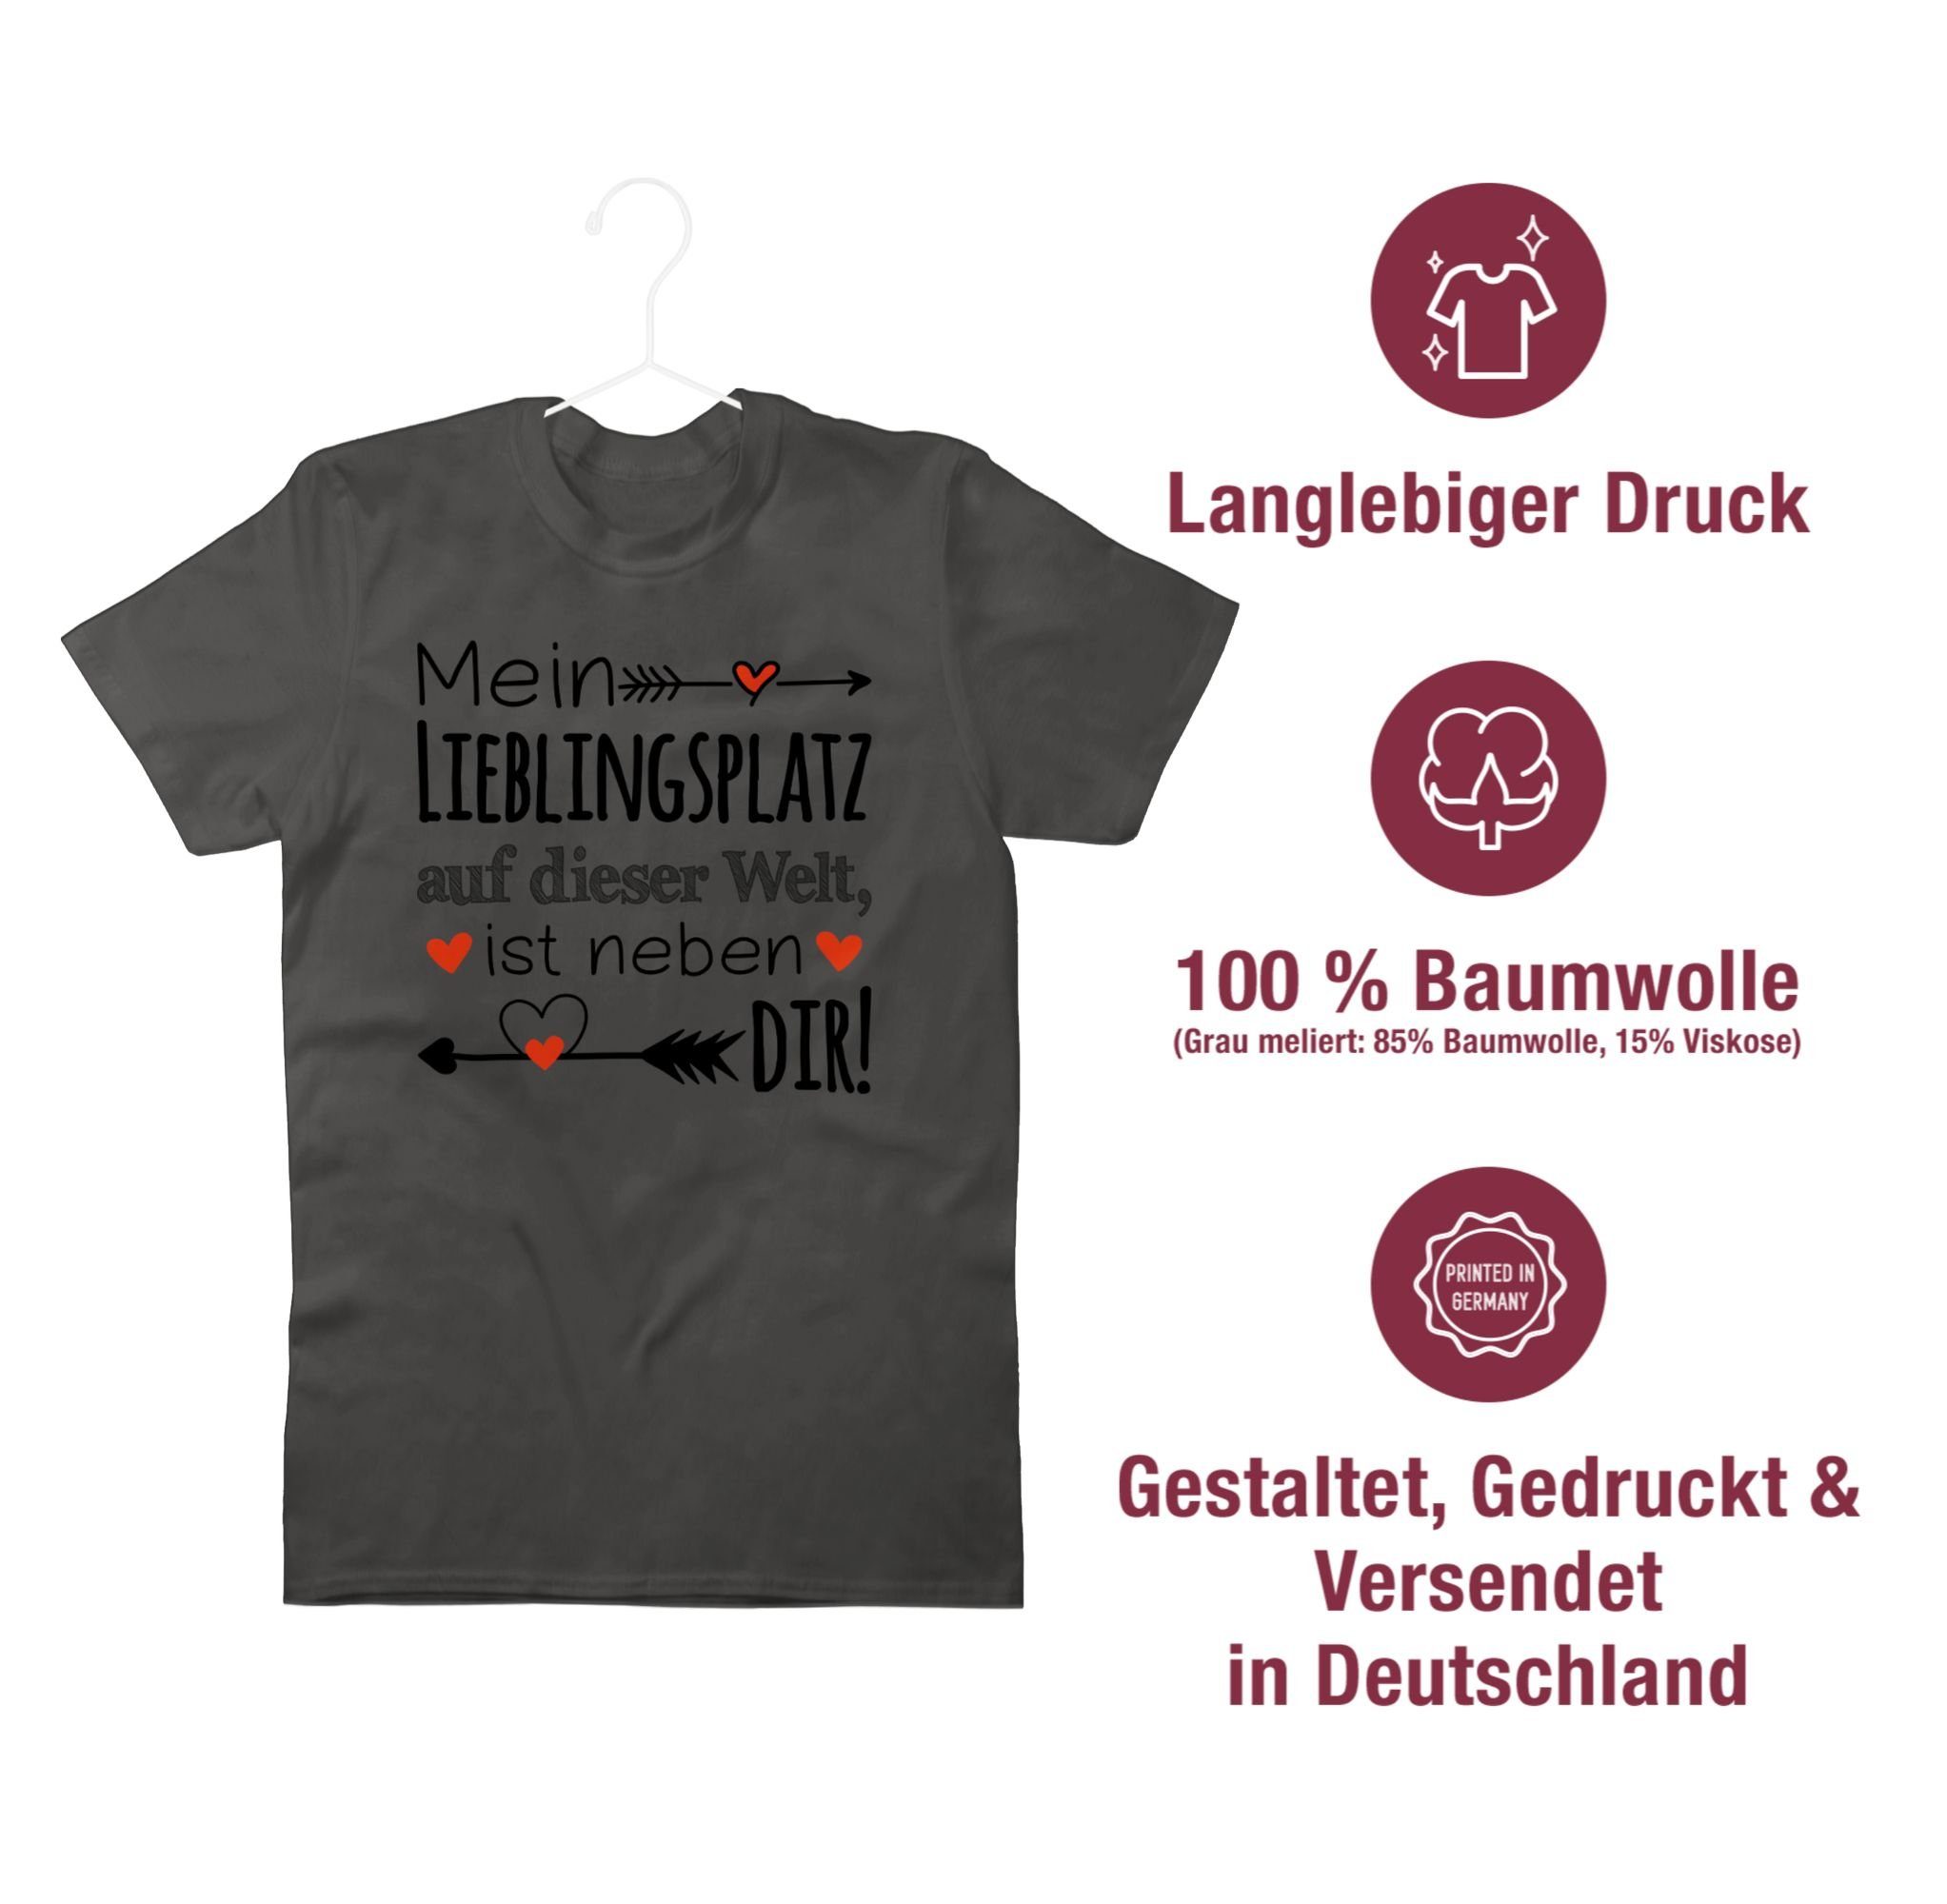 Liebe Valentinstag Beziehung Shirtracer T-Shirt Liebeserklärung 2 - Partner Partnerin Lieblingsplatz Geschenk Partner Dunkelgrau